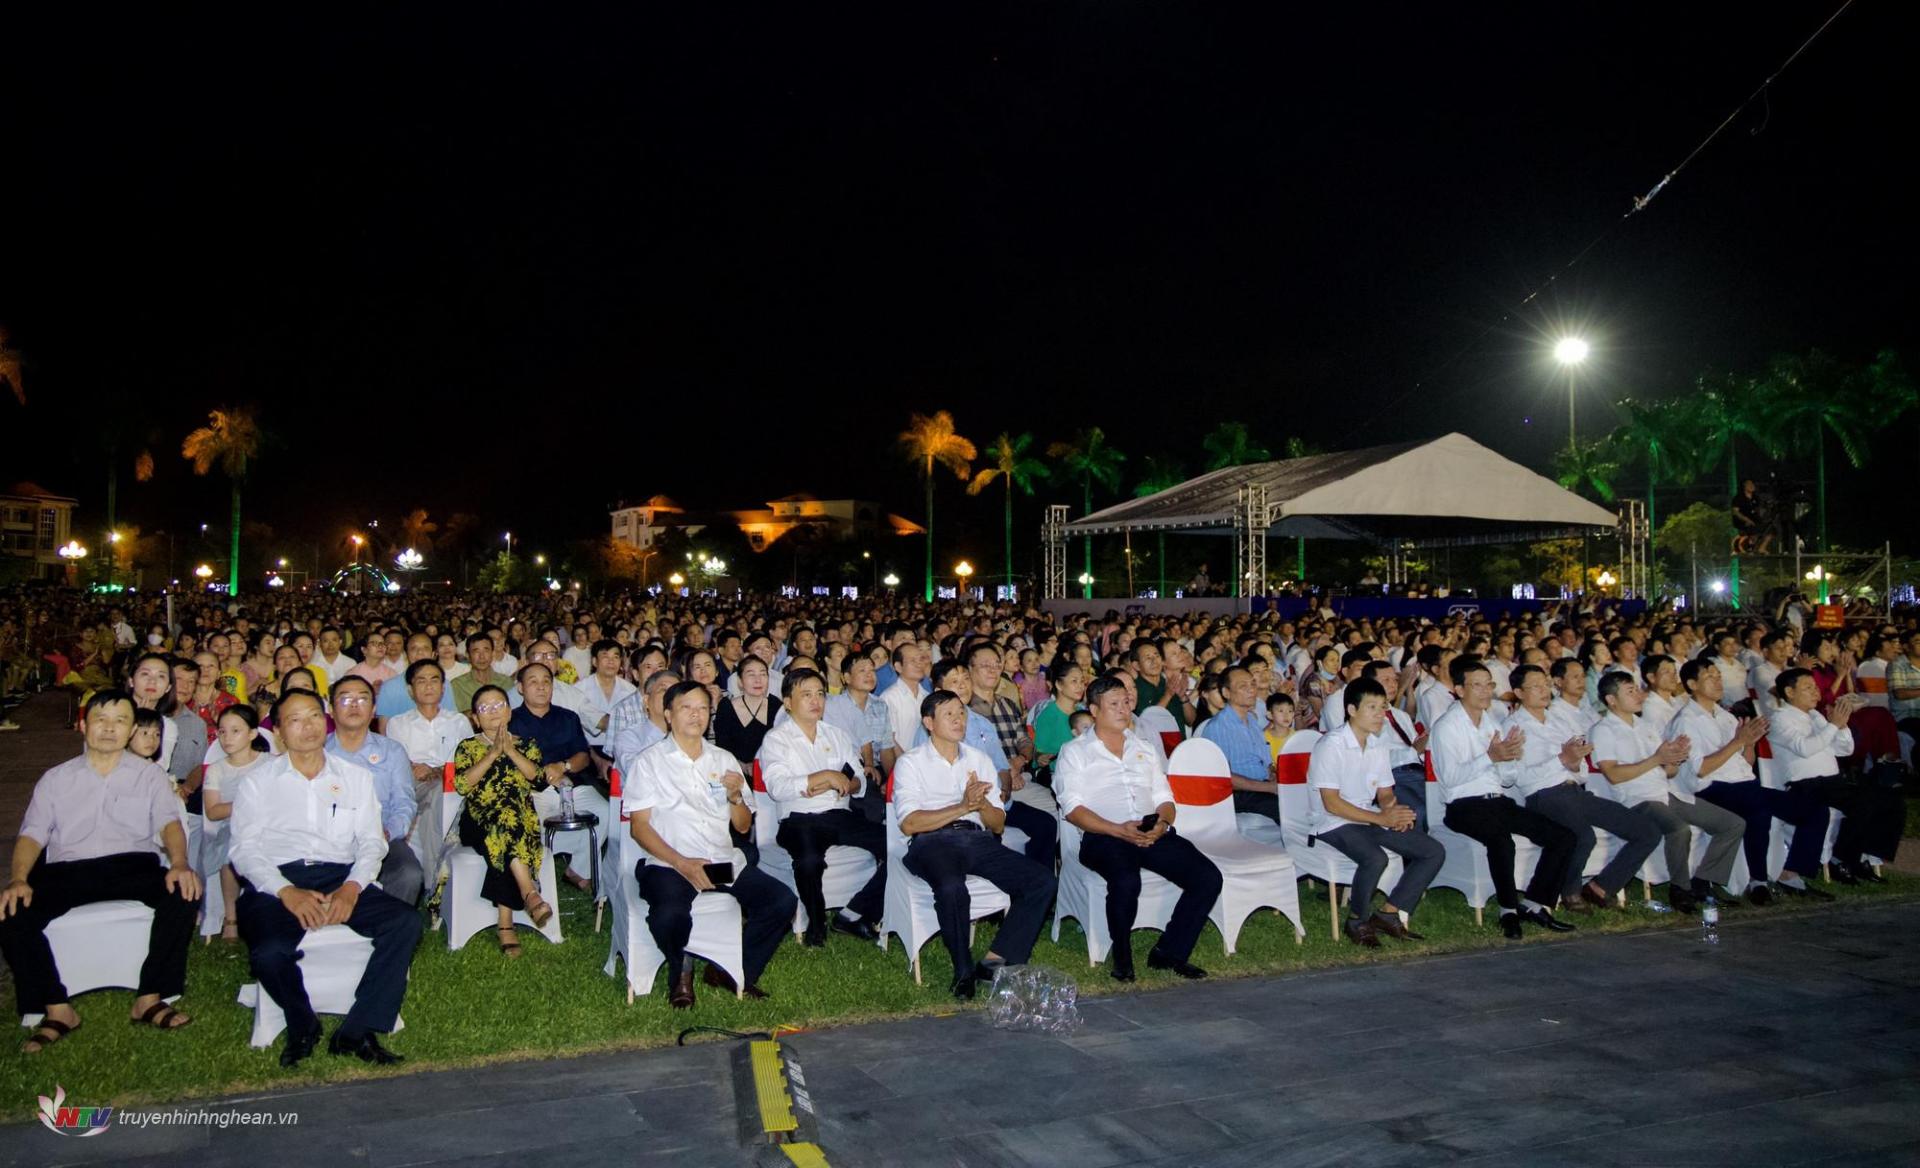 Các đại biểu cùng đông đảo nhân dân thành phố dự buổi lễ.